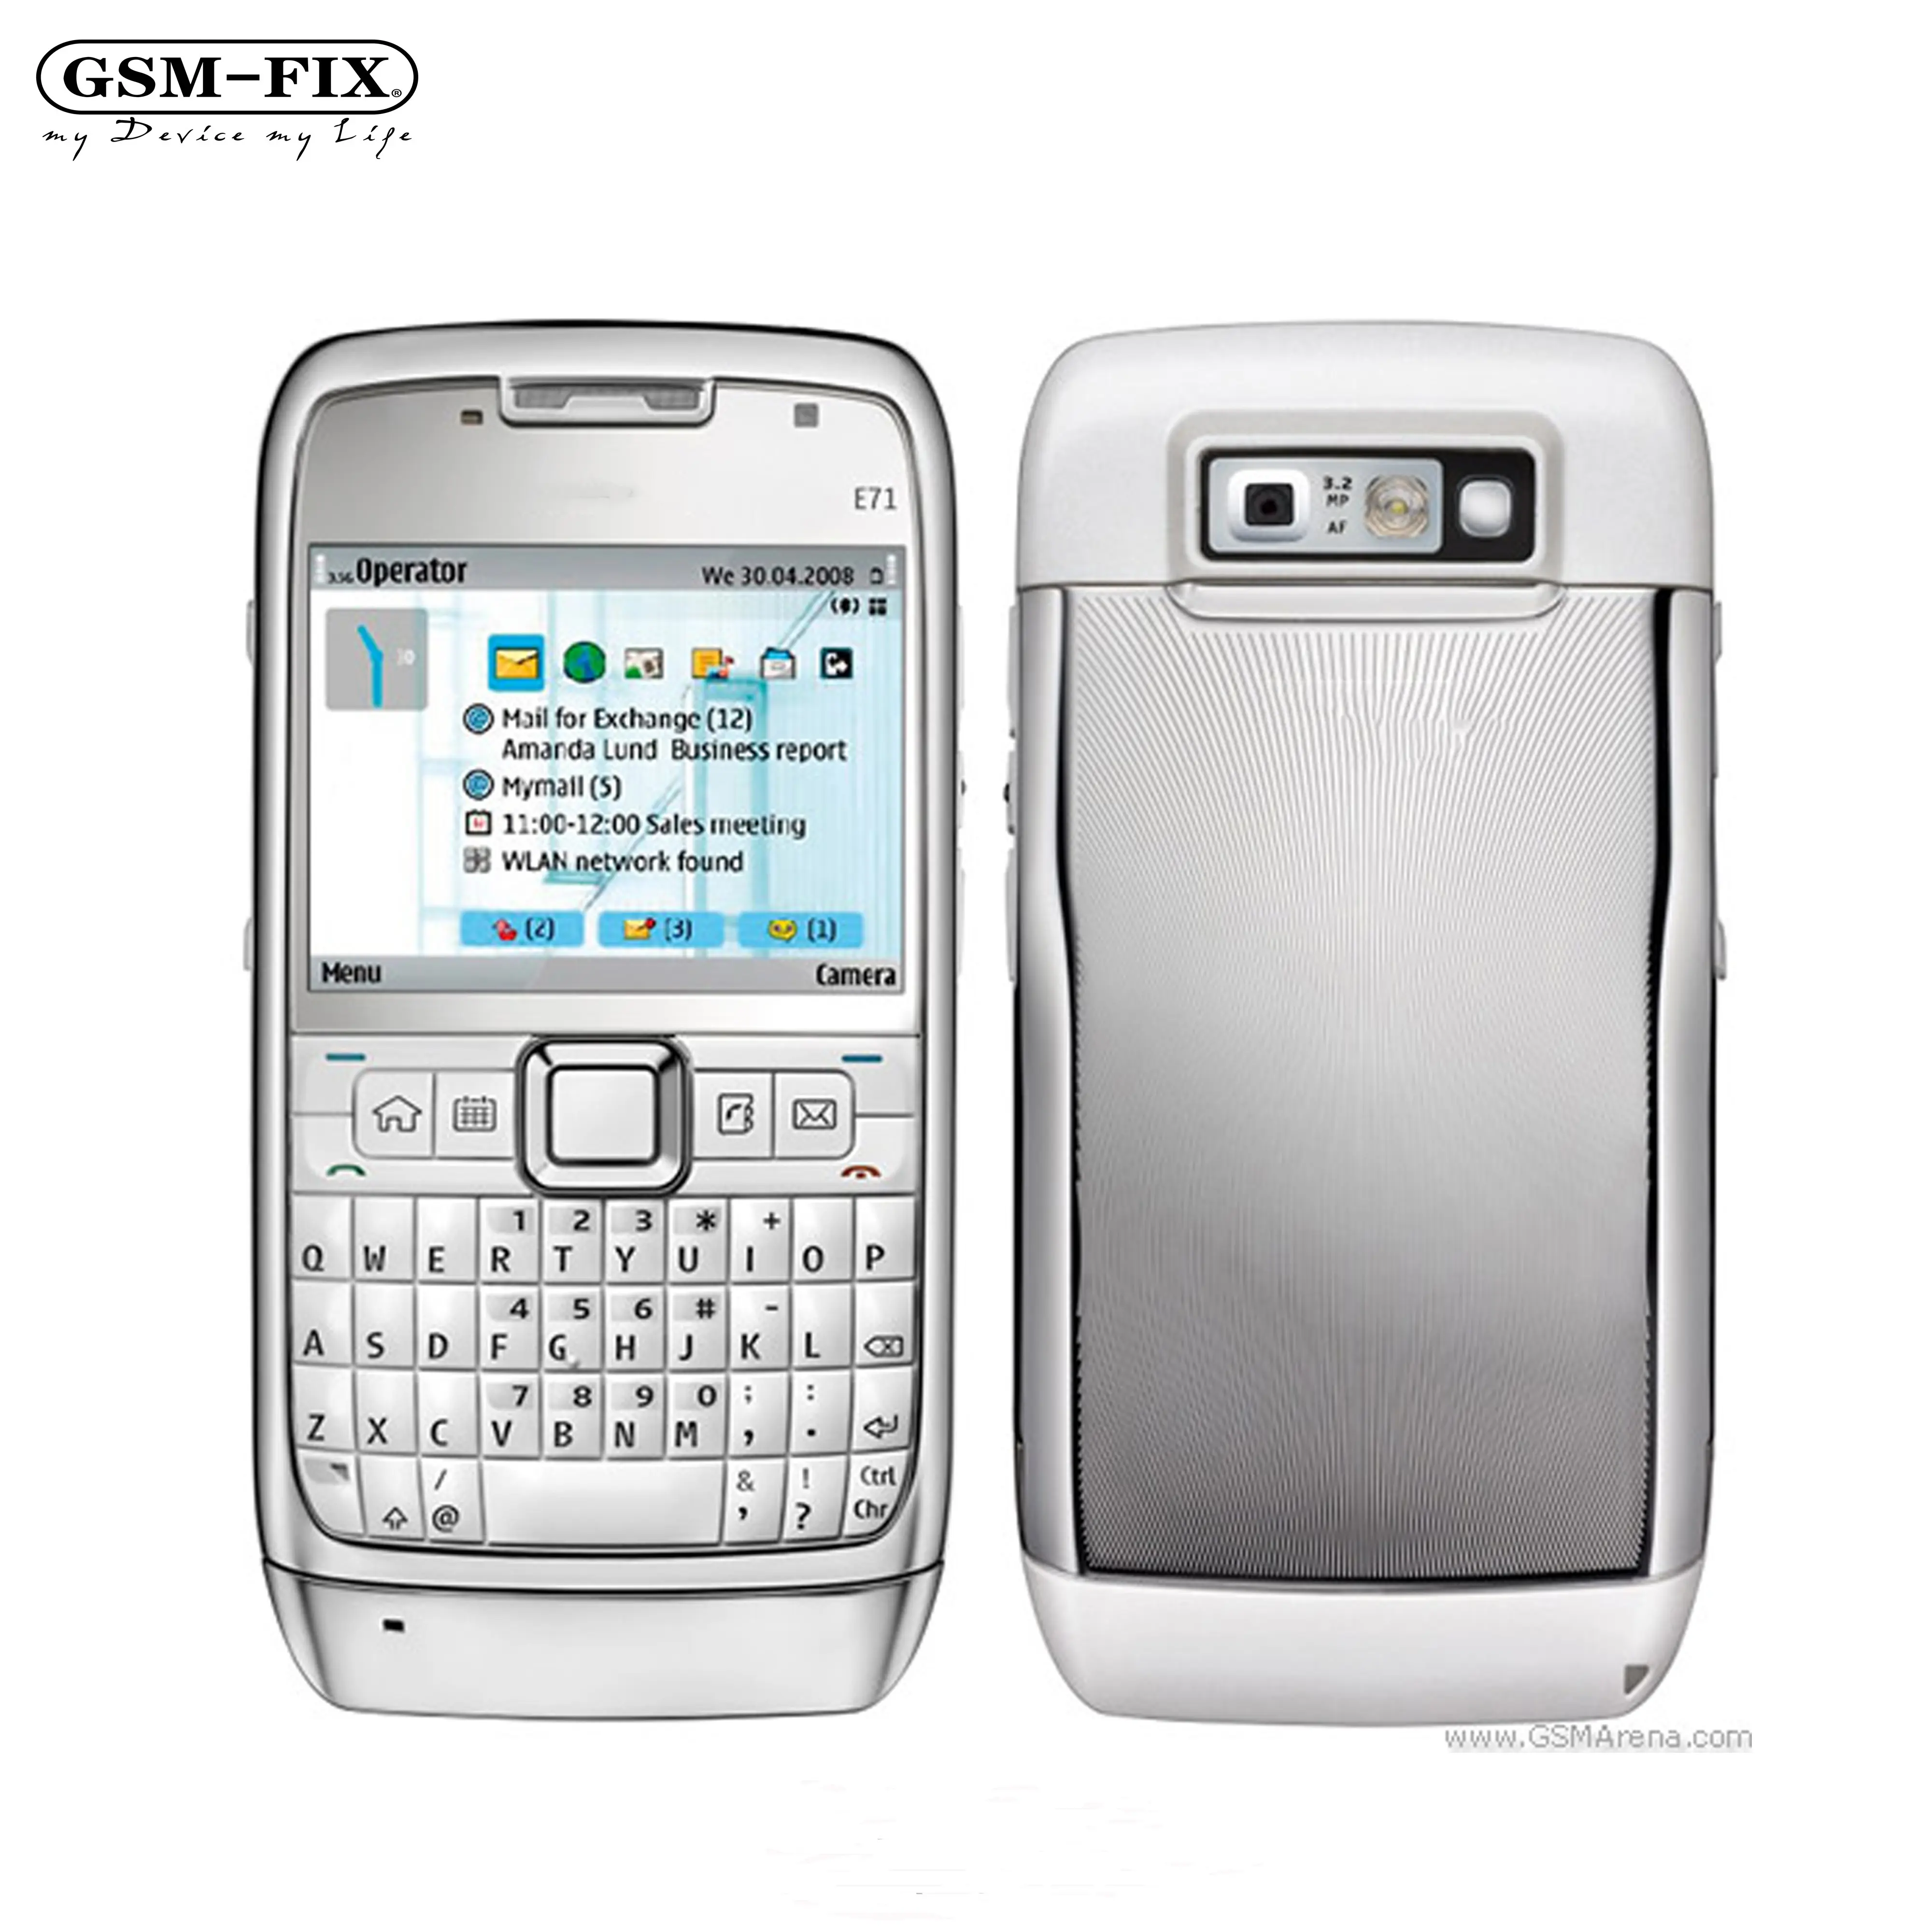 GSM-FIX originale E71 per telefono cellulare Nokia 3.2MP 3G sbloccato per telefono cellulare con tastiera Nokia E71 QWERTY